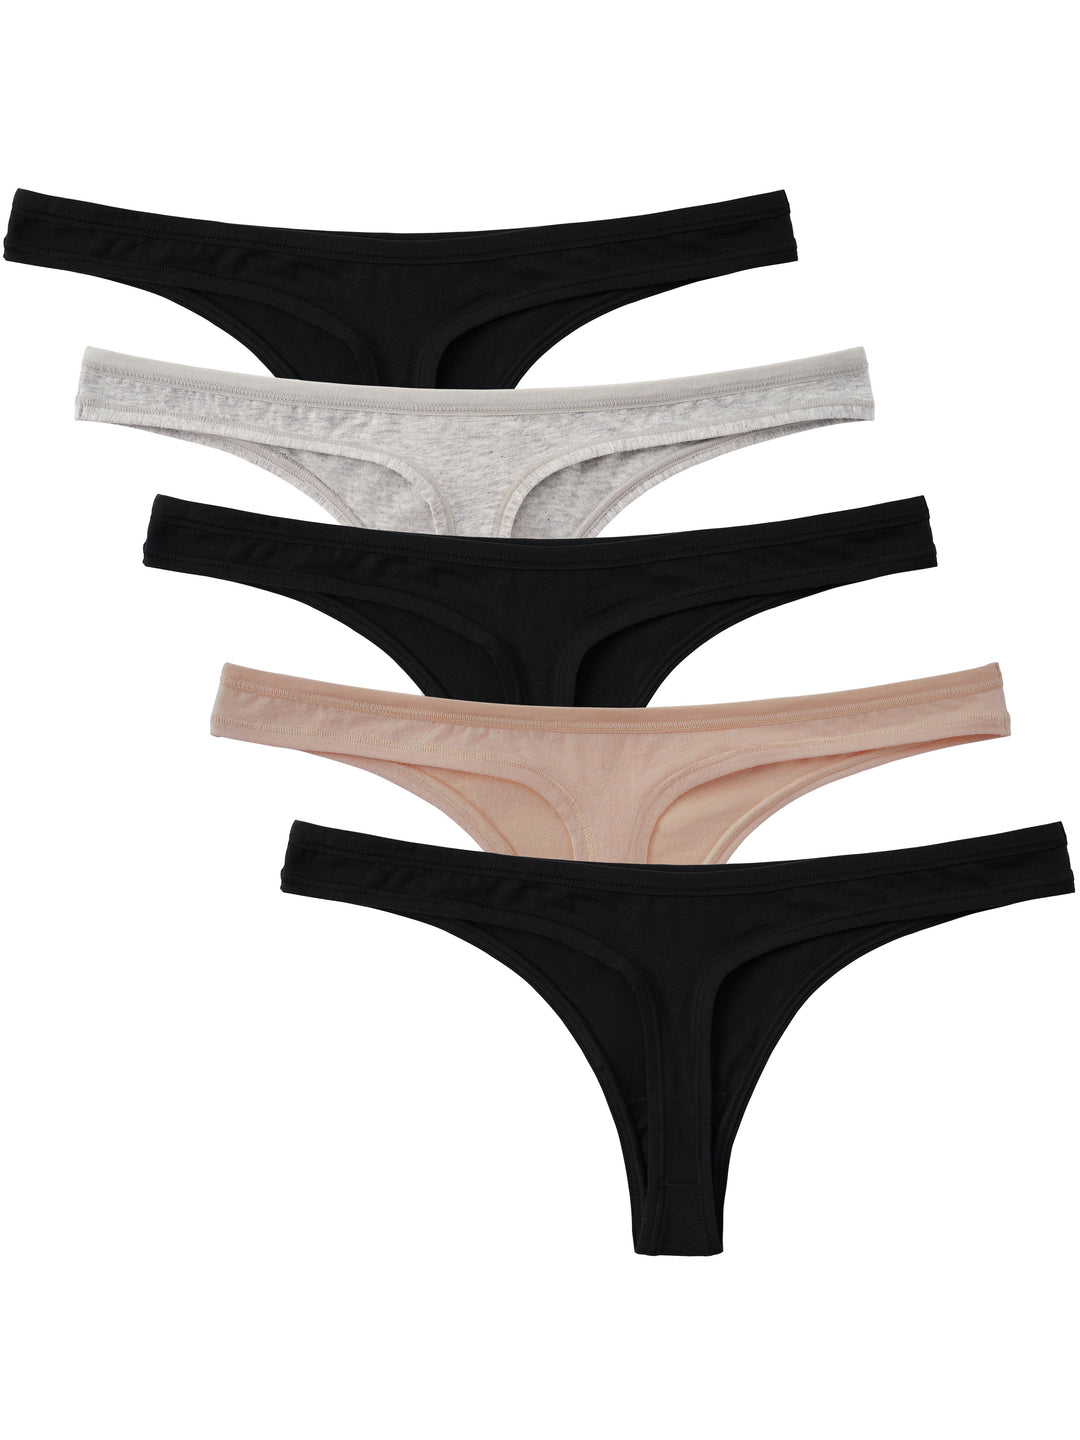 Secret Treasures Nylon Thong/String Panties for Women for sale